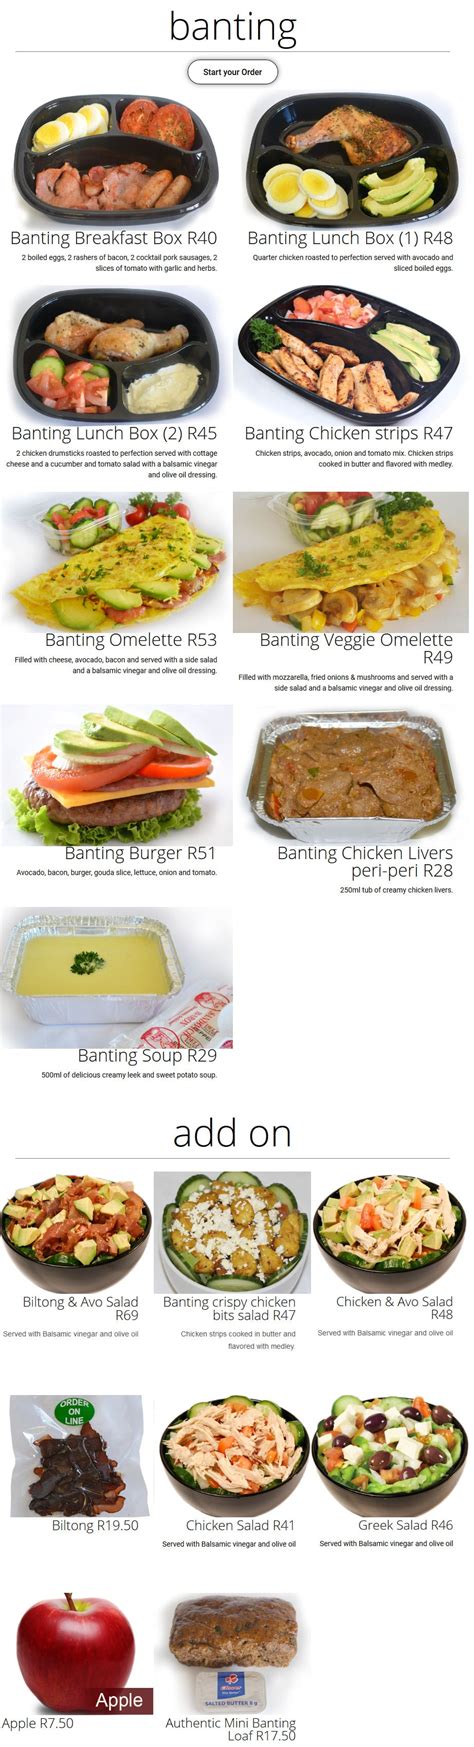 sandwich baron menu prices specials